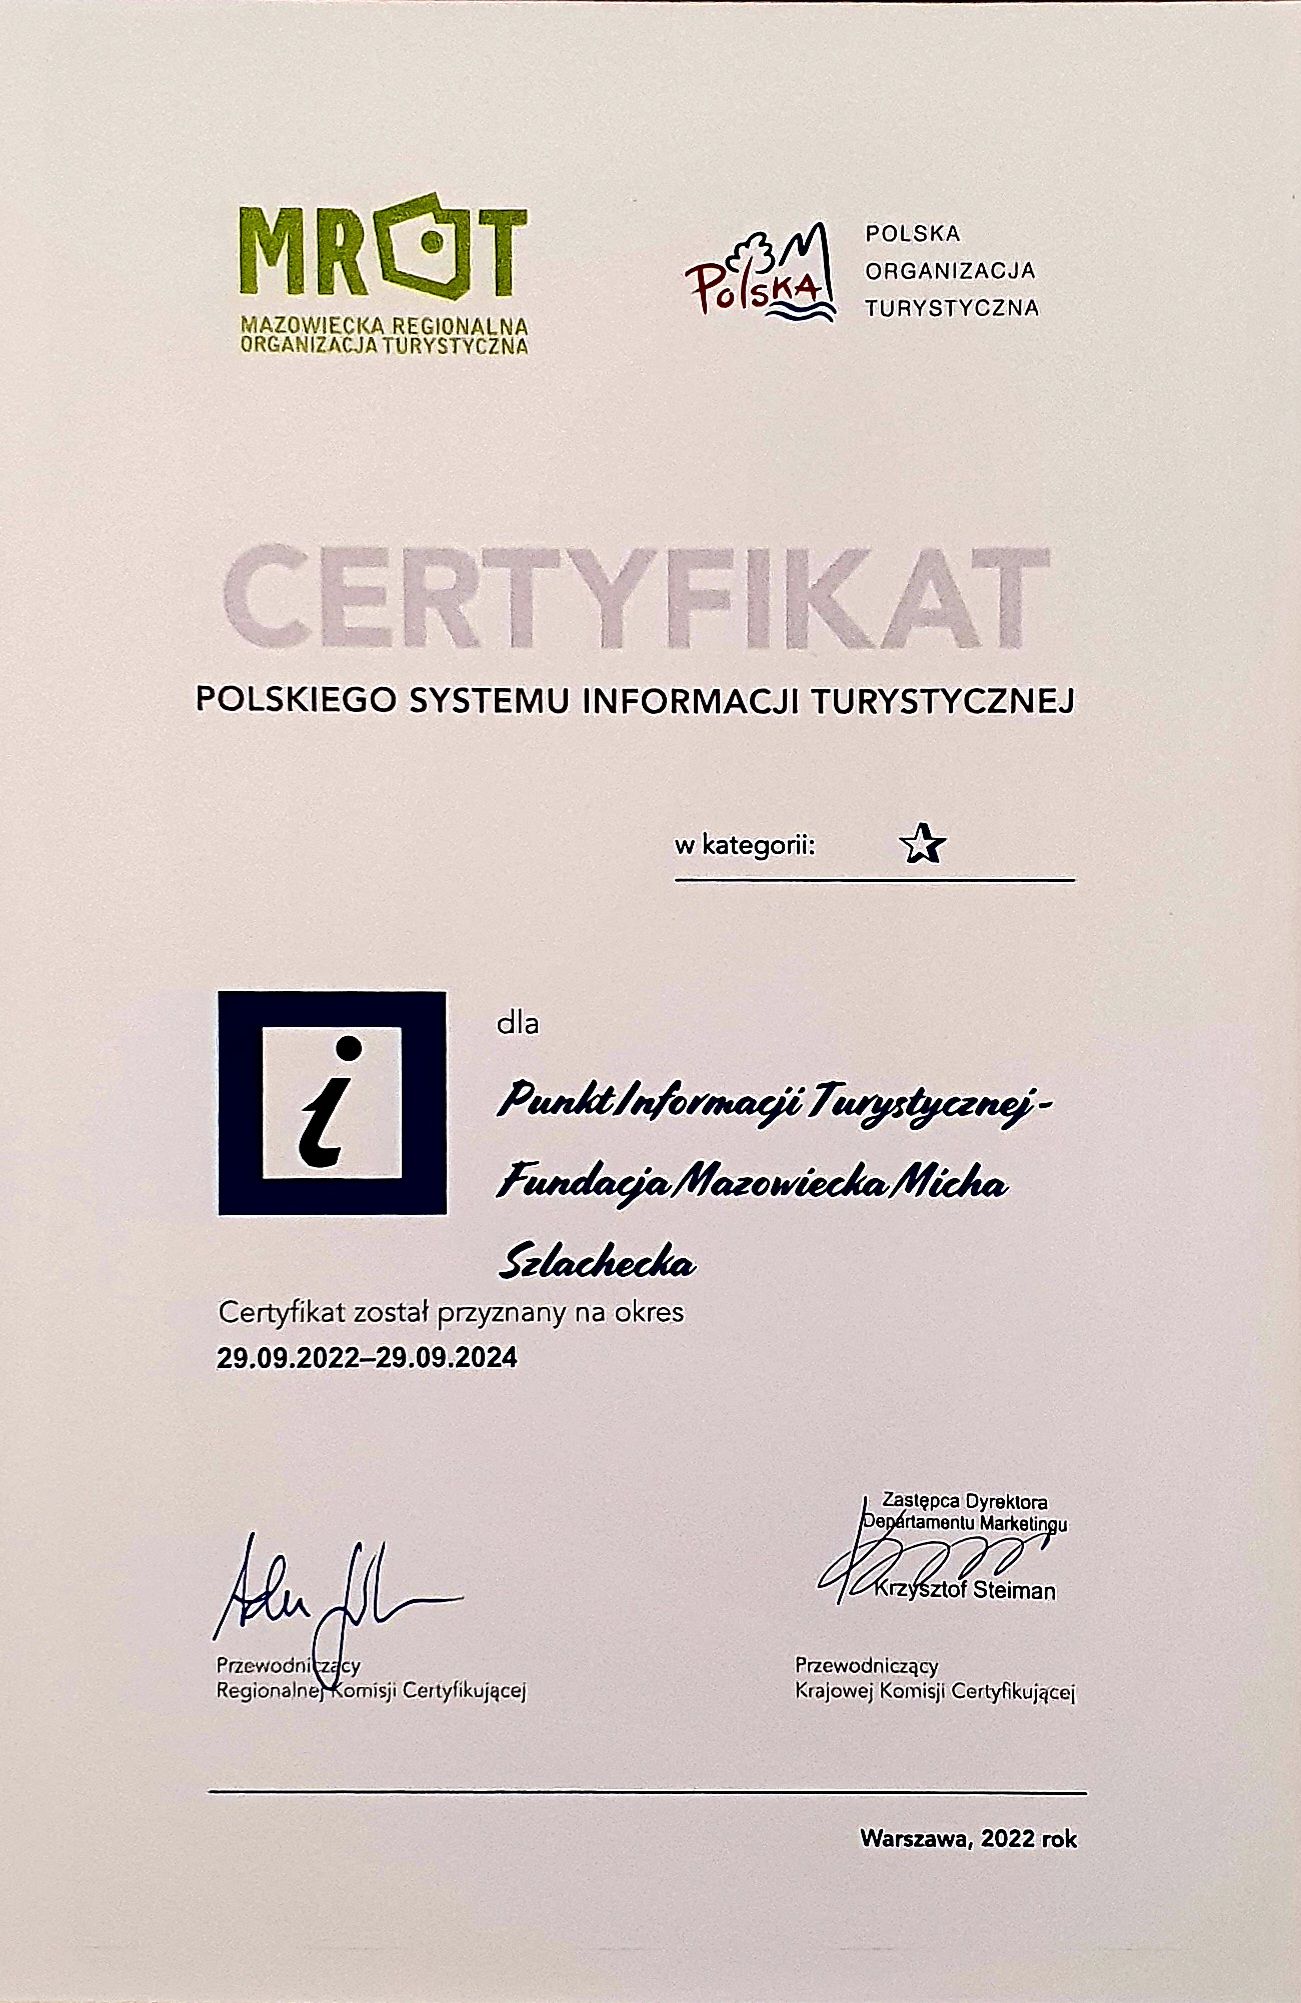 Zdjęcie podstrony - Certyfikat dla  Punktu Informacji Turystycznej prowadzonego przez Fundację Mazowiecka Micha Szlachecka.